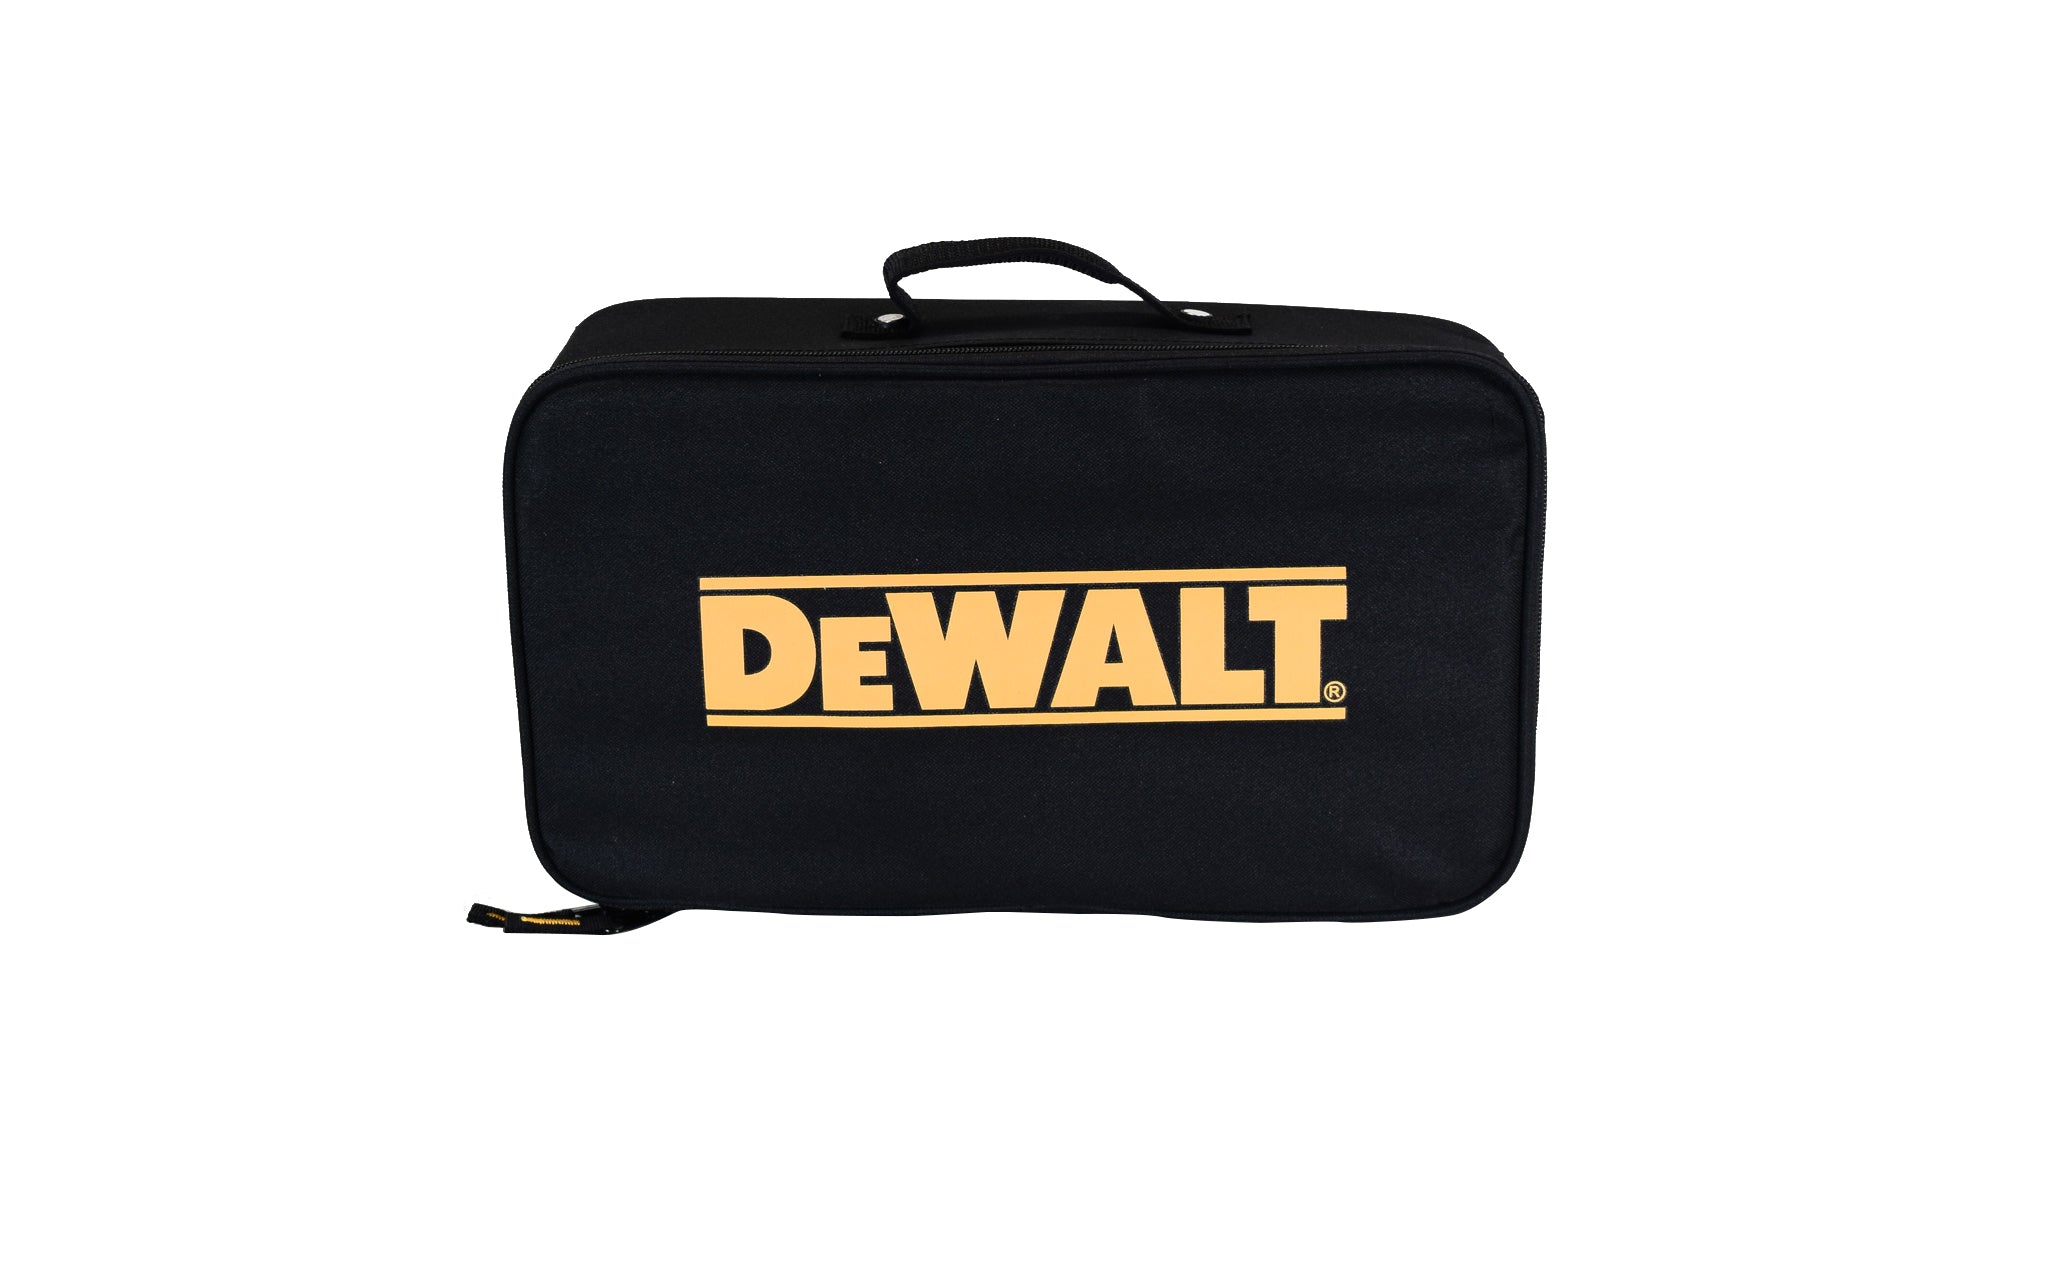 Dewalt-Rectangle-Tool-Bag-367-387-Kit-bag-image-2